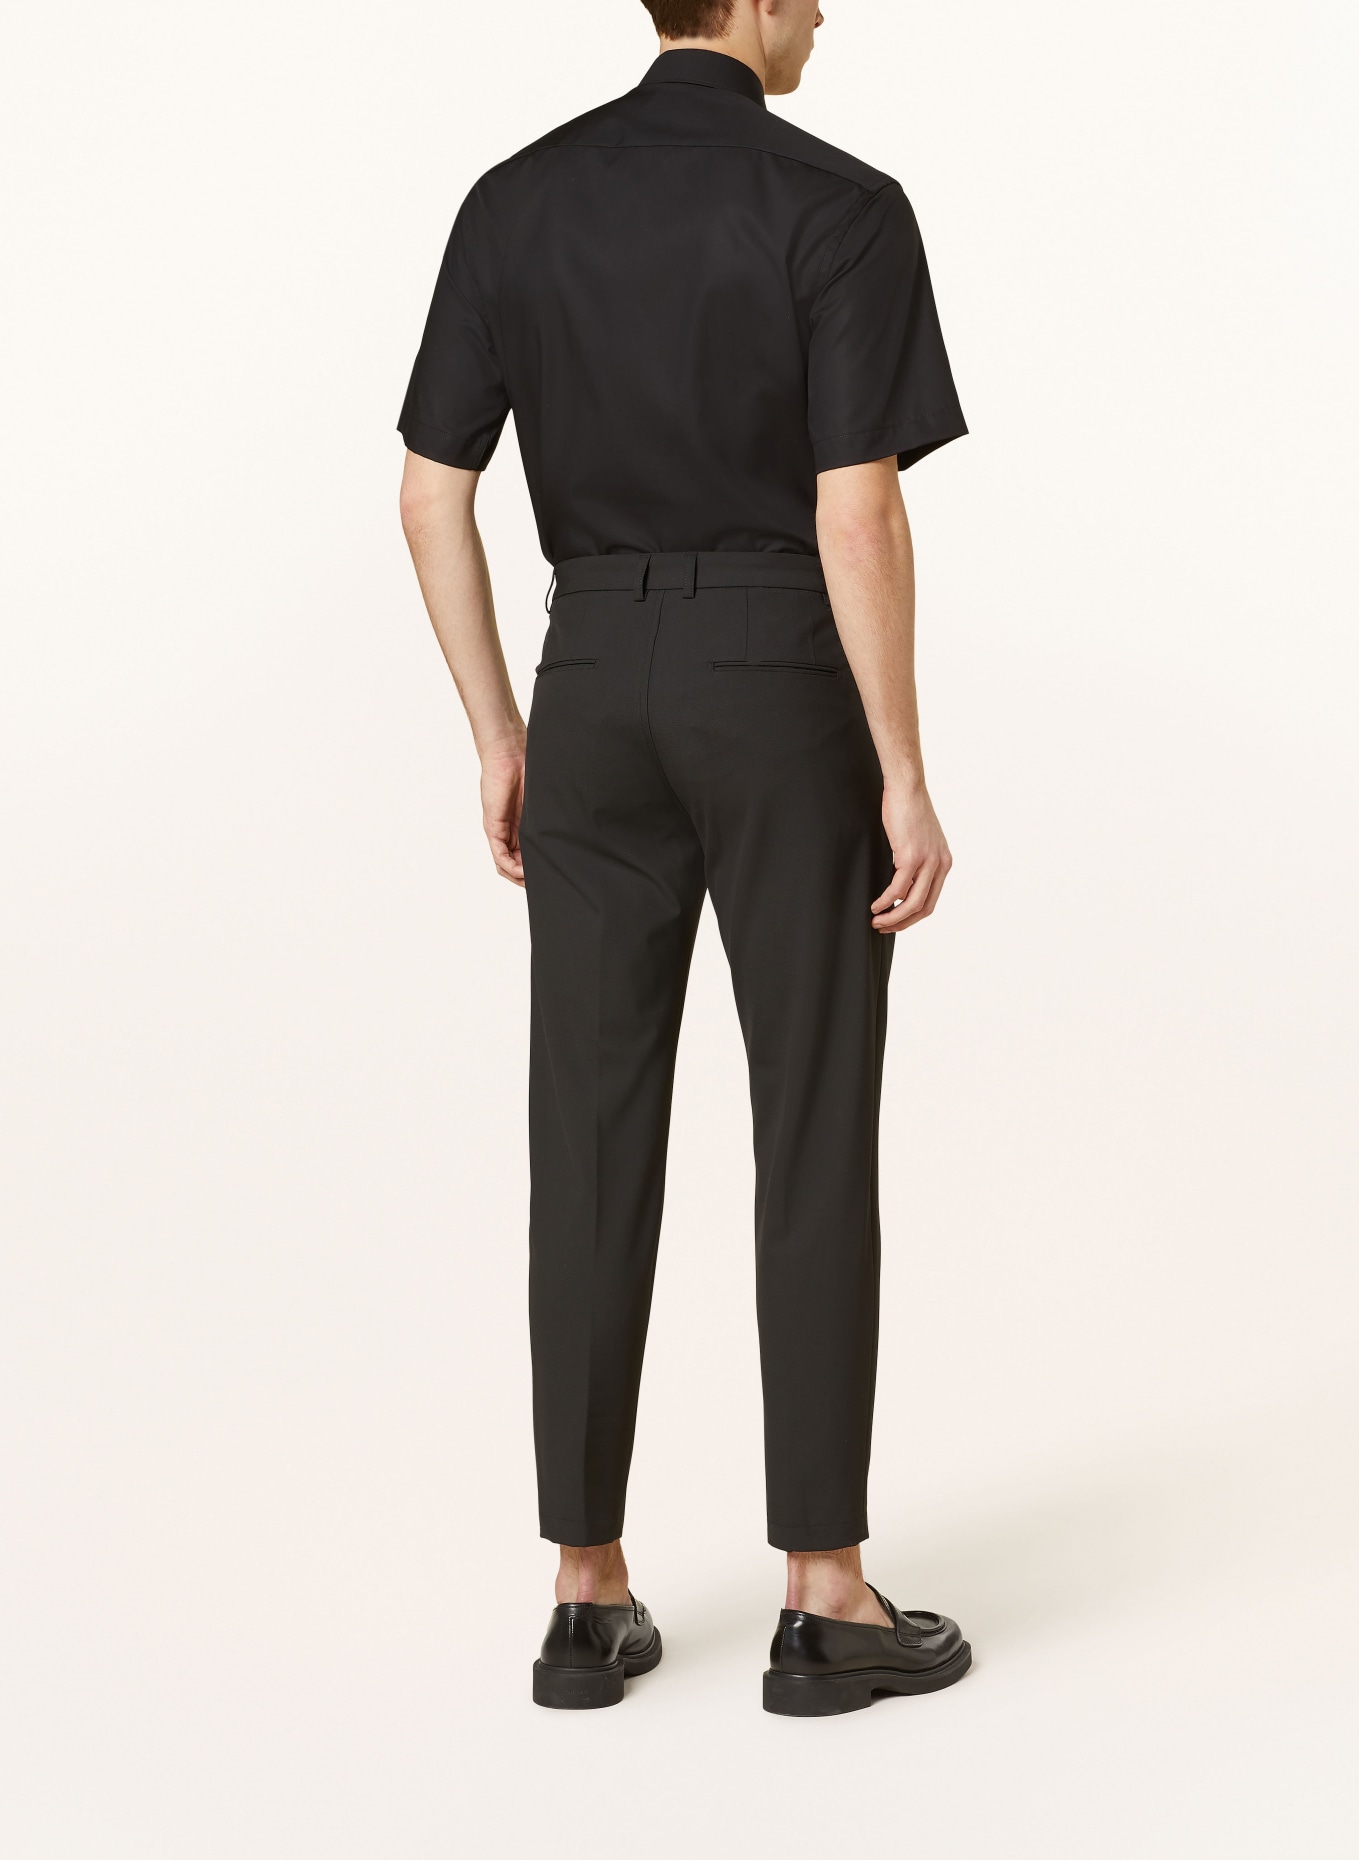 ETERNA Short sleeve shirt modern fit, Color: BLACK (Image 3)